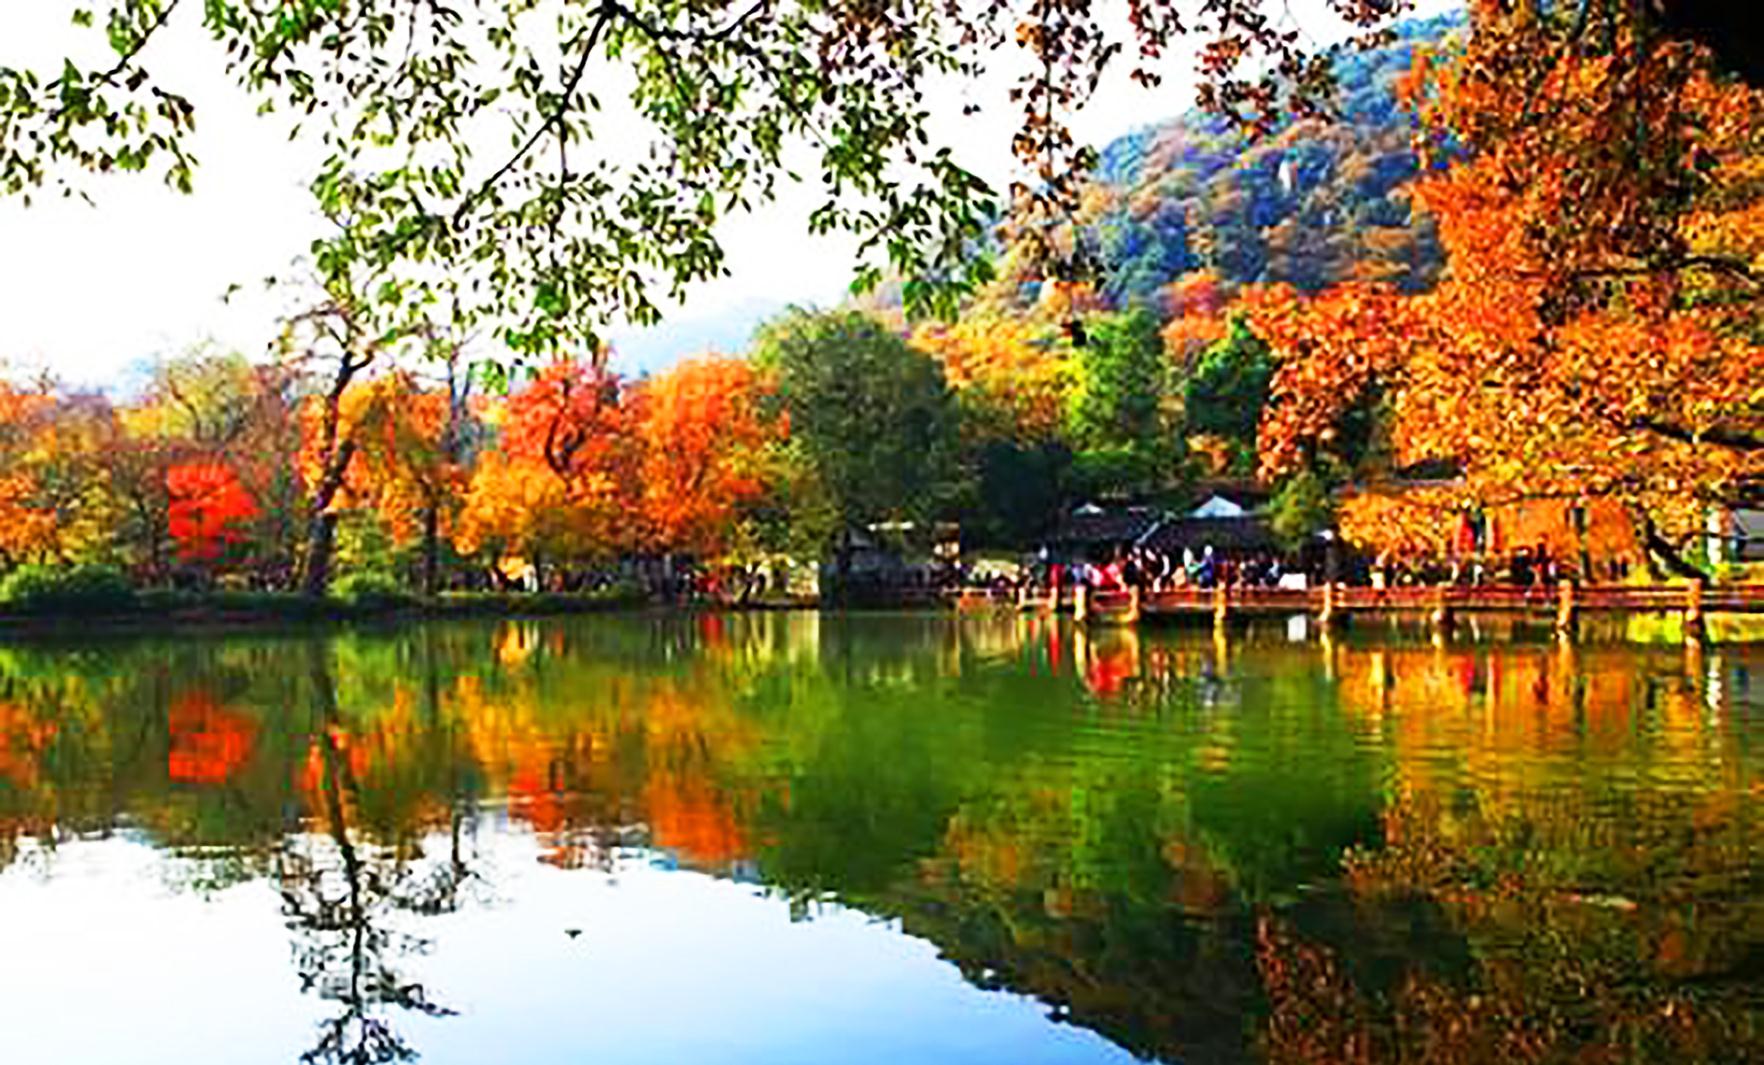 【携程攻略】苏州天平山景点,苏州天平山是秋季枫叶盛红时最佳赏枫地，天平山脚下，一潭清水湖映衬…